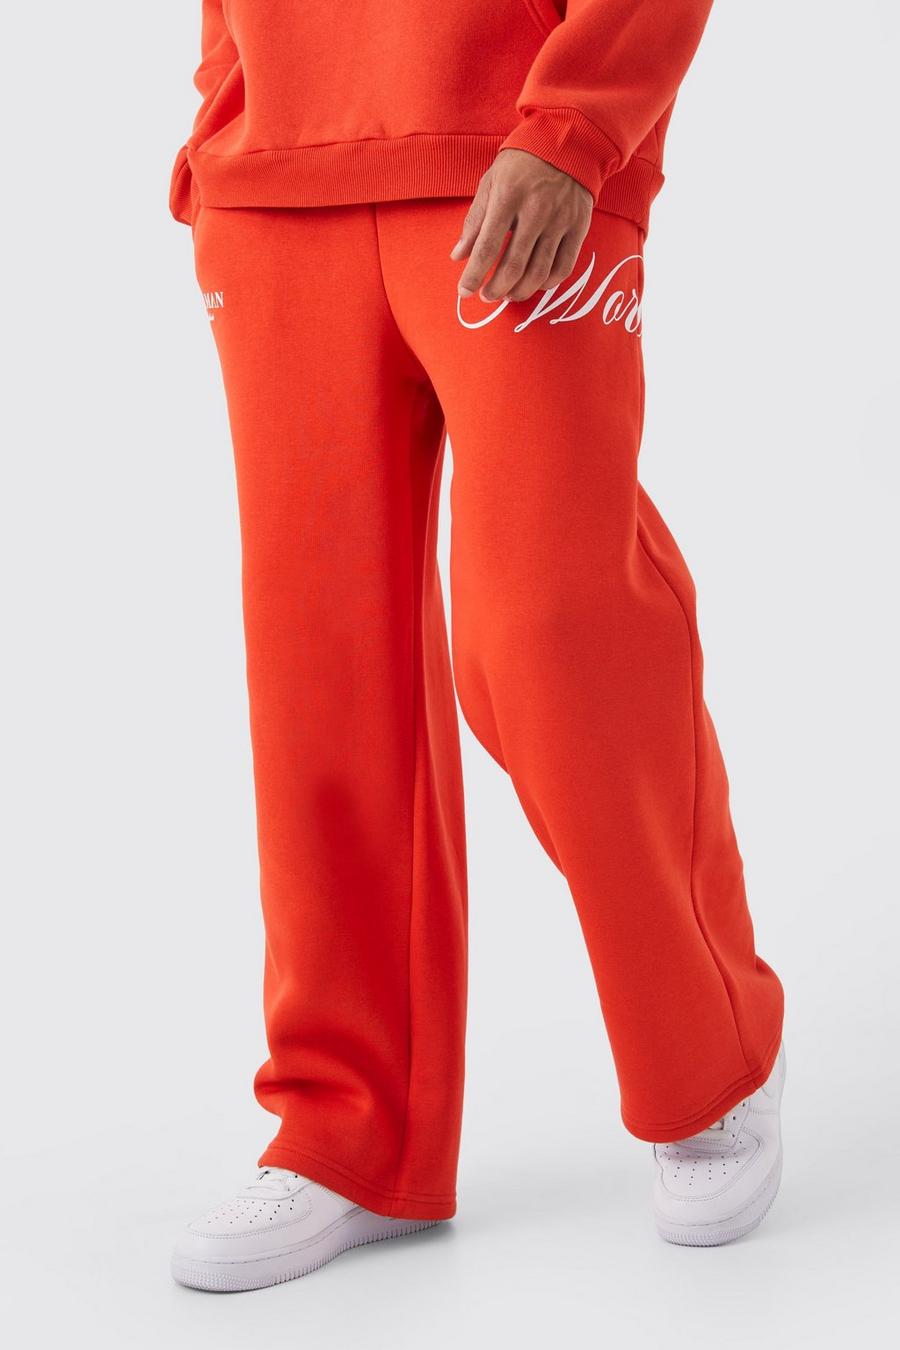 Pantalón deportivo de pernera ancha grueso con cordón elástico, Coral